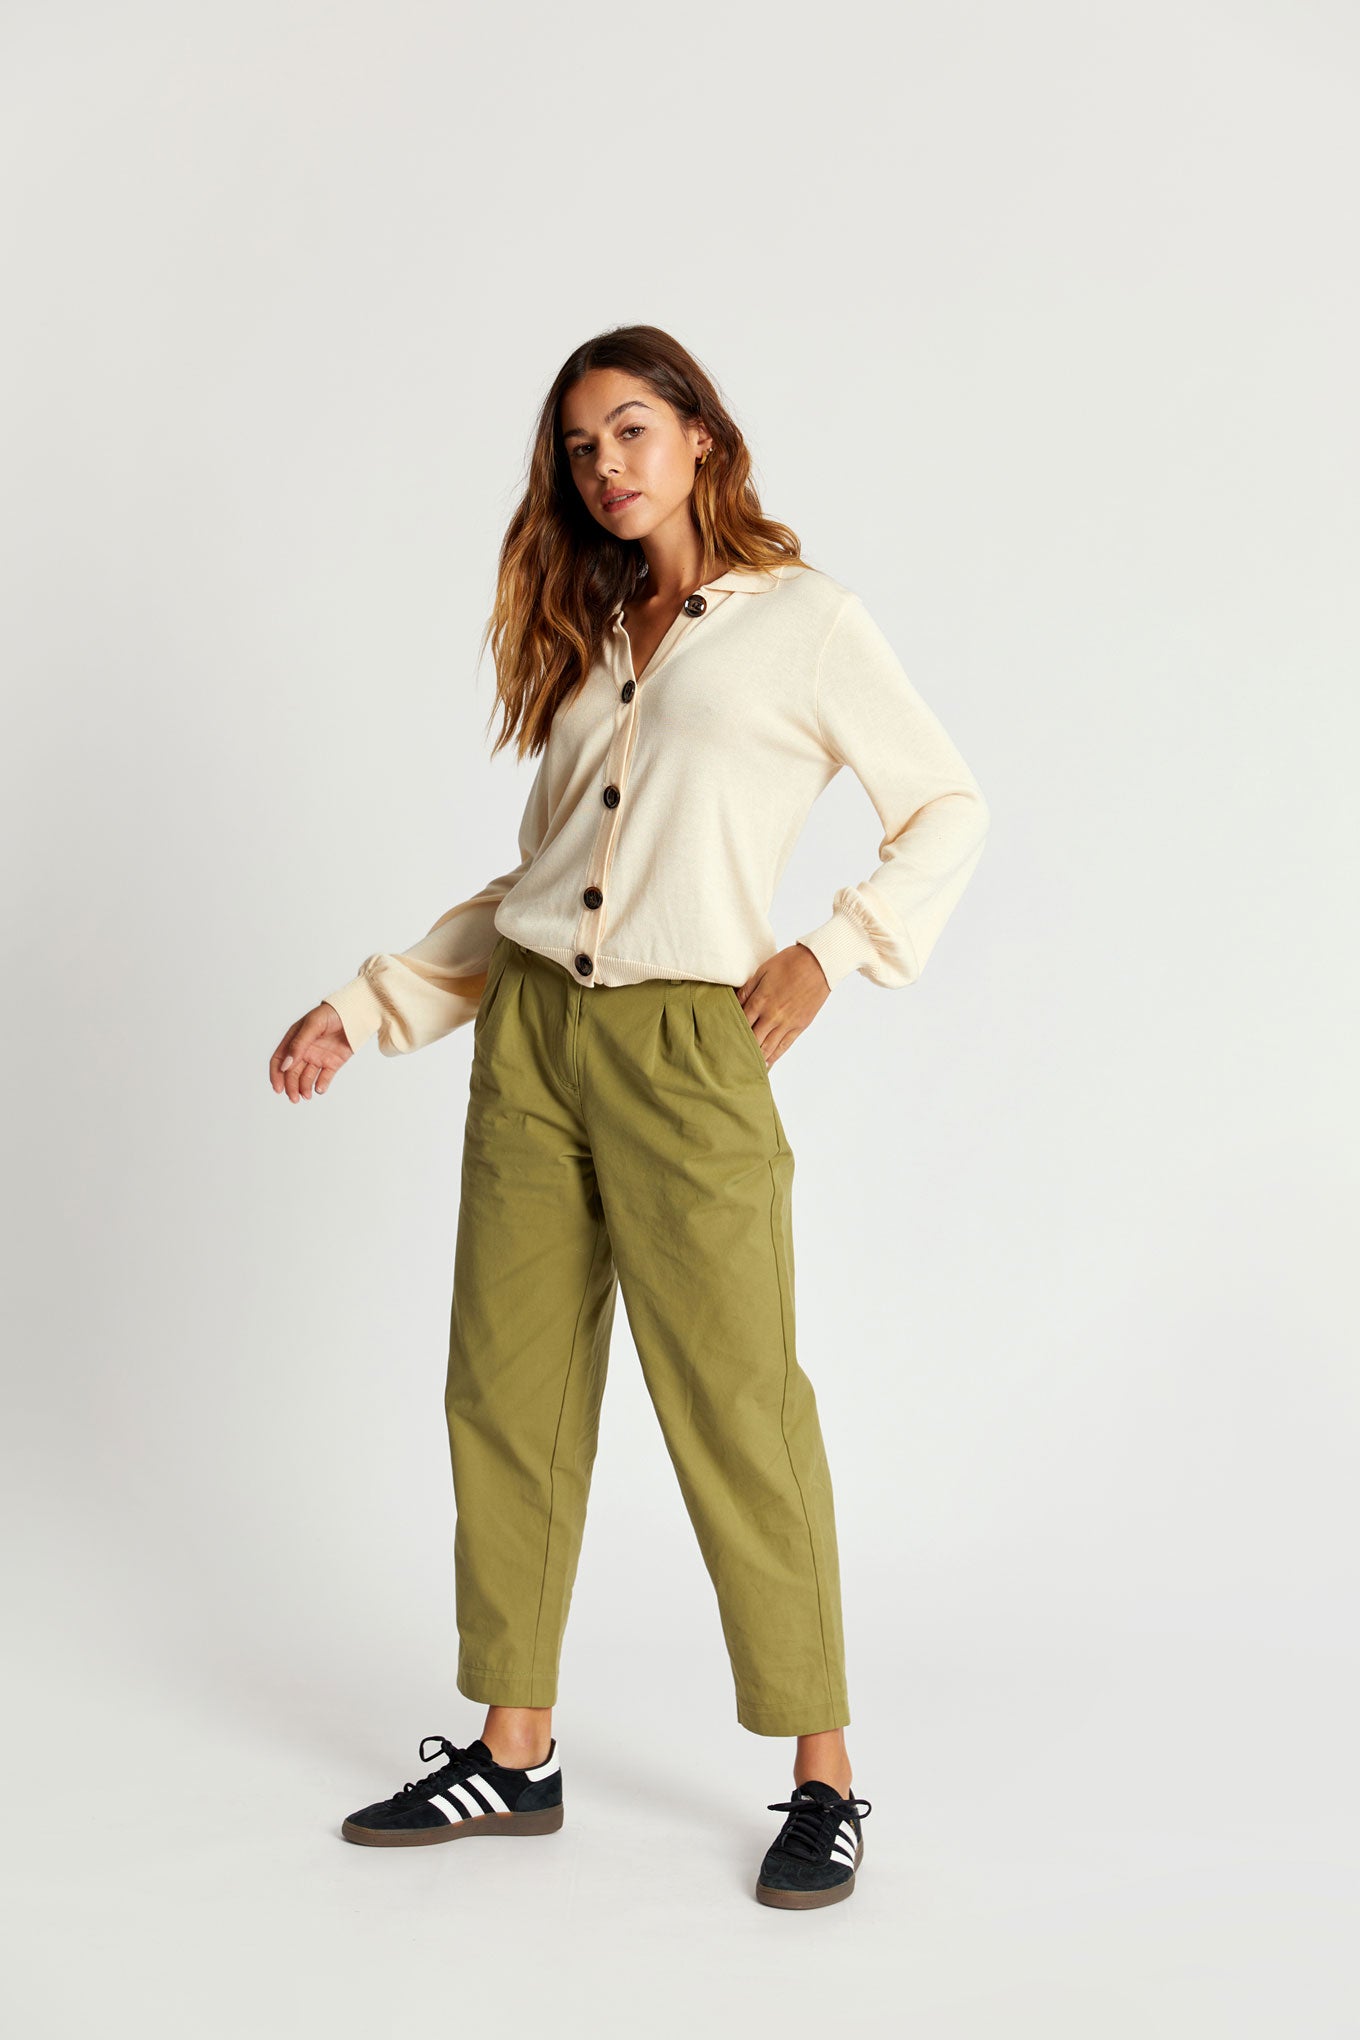 OLIA Organic Cotton Trouser - Khaki Green, SIZE 1 / UK 8 / EUR 36